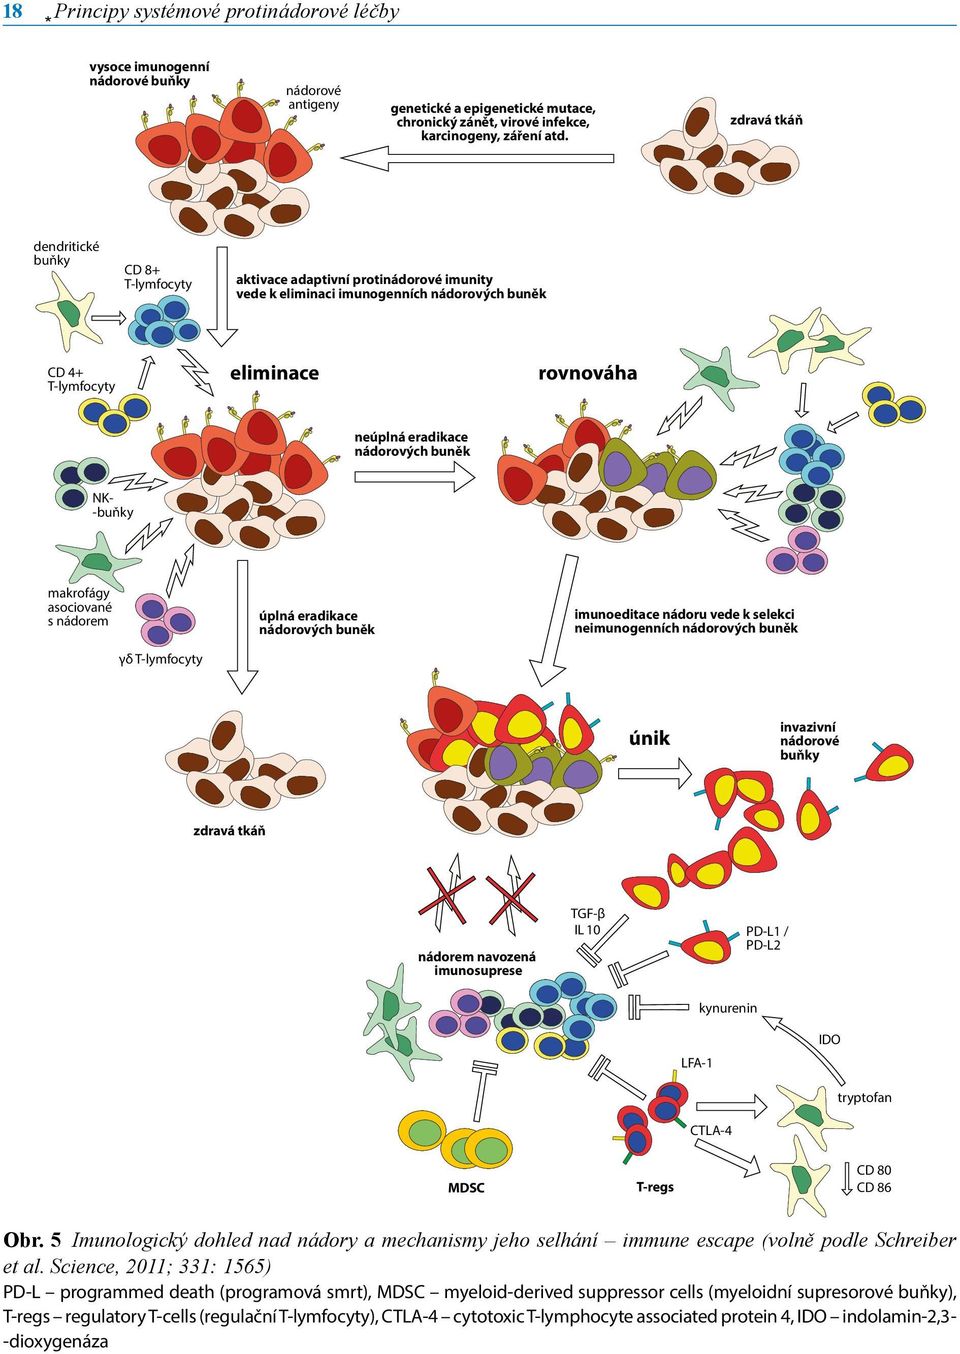 nádorových buněk NK- -buňky makrofágy asociované s nádorem γδ T-lymfocyty úplná eradikace nádorových buněk imunoeditace nádoru vede k selekci neimunogenních nádorových buněk únik invazivní nádorové